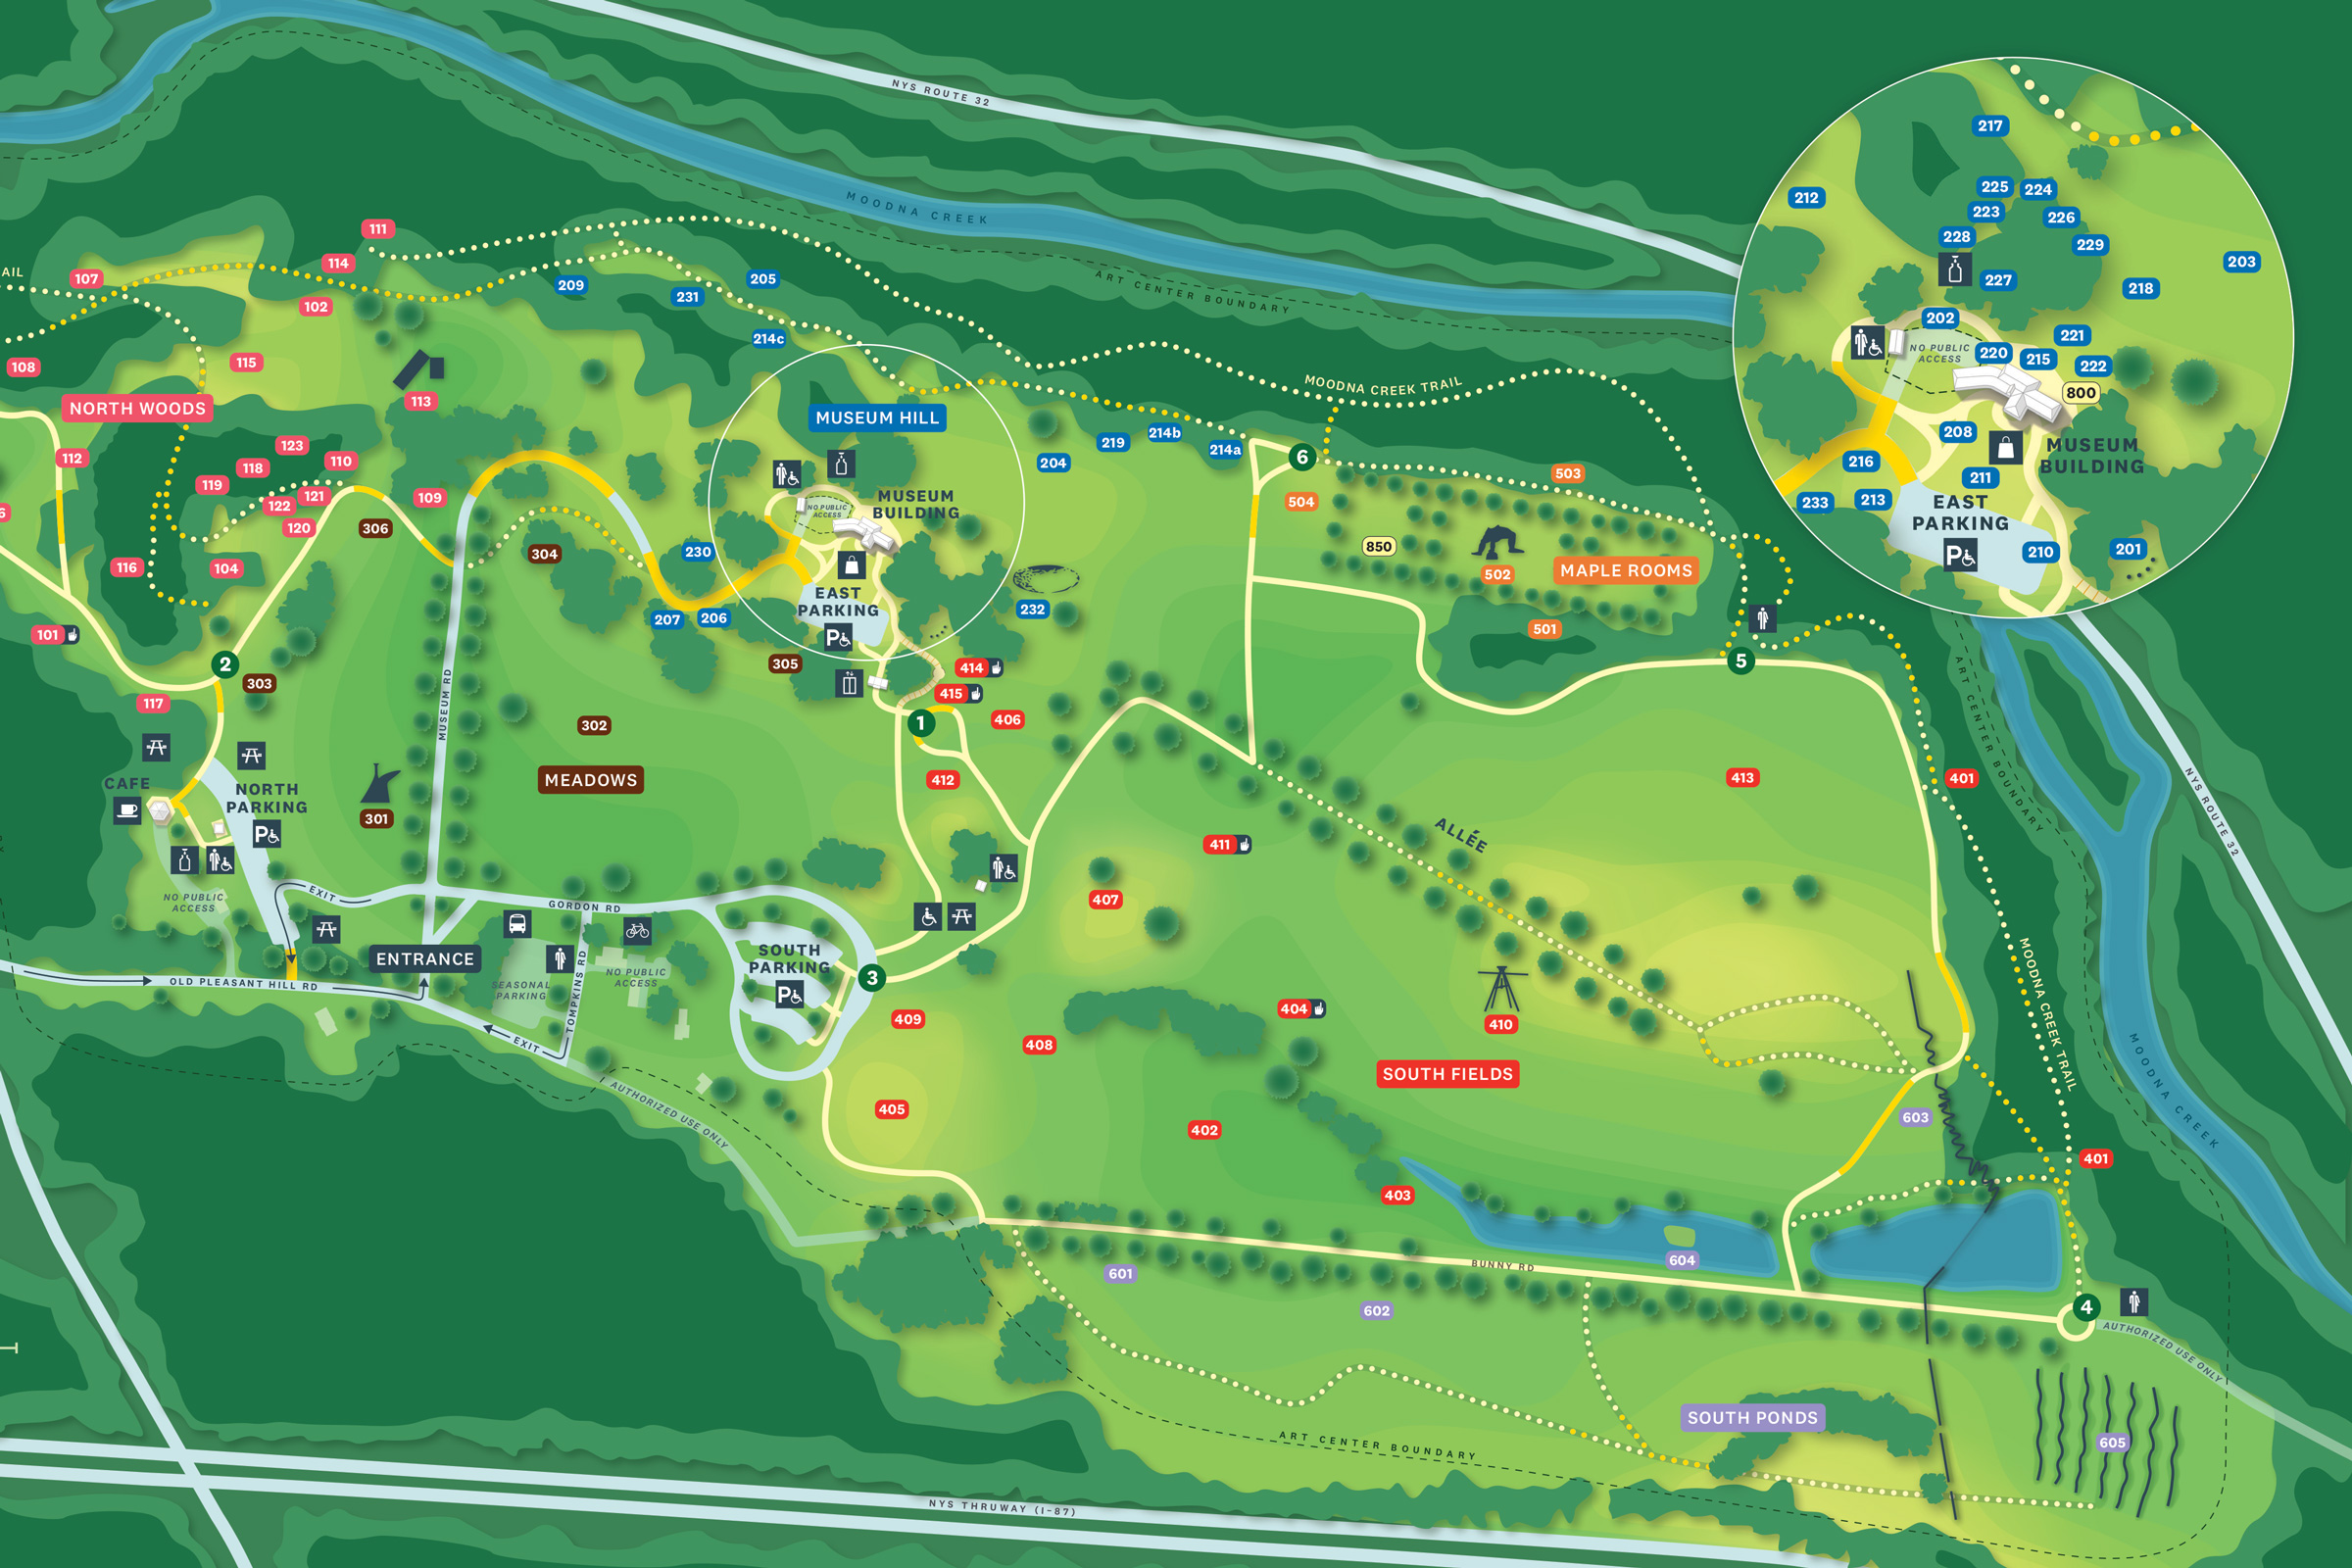 Storm King Sculpture Park Map - Briana Teresita